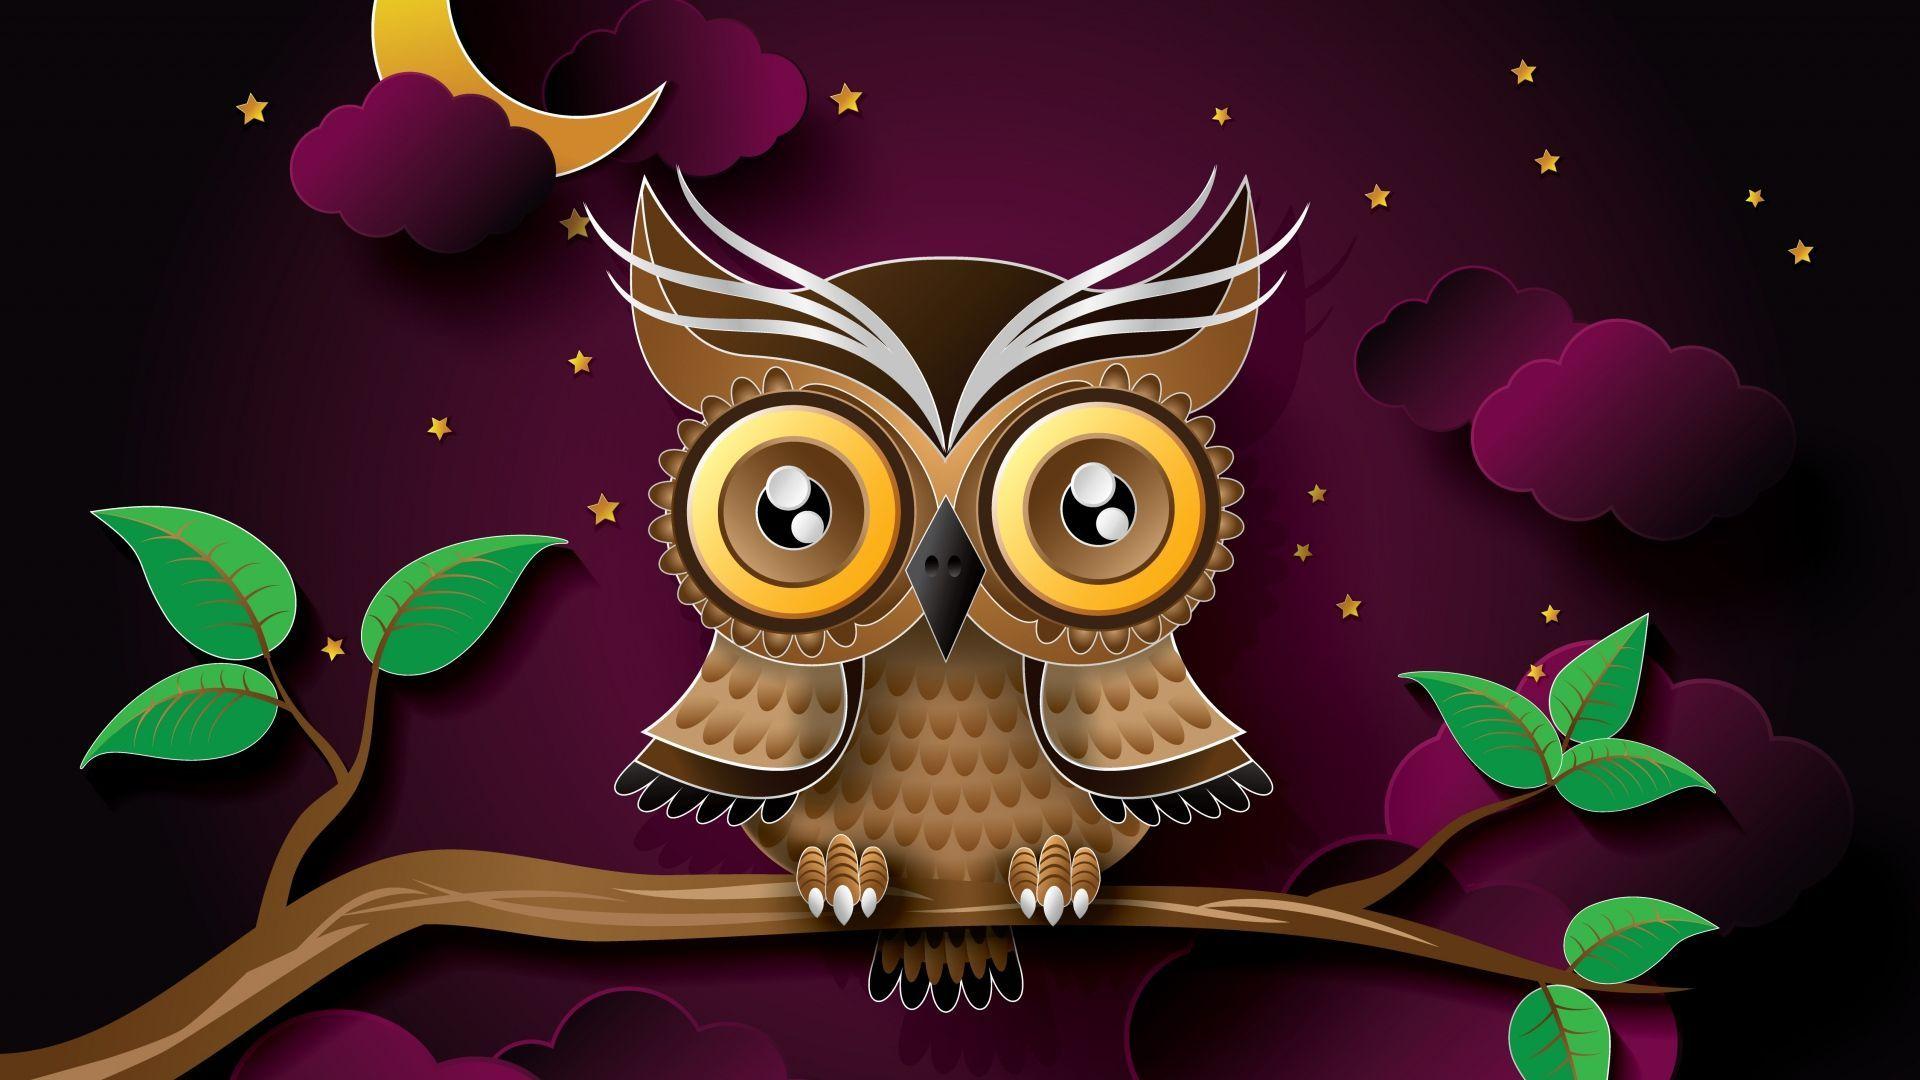 Cute Owl Halloween Wallpaper